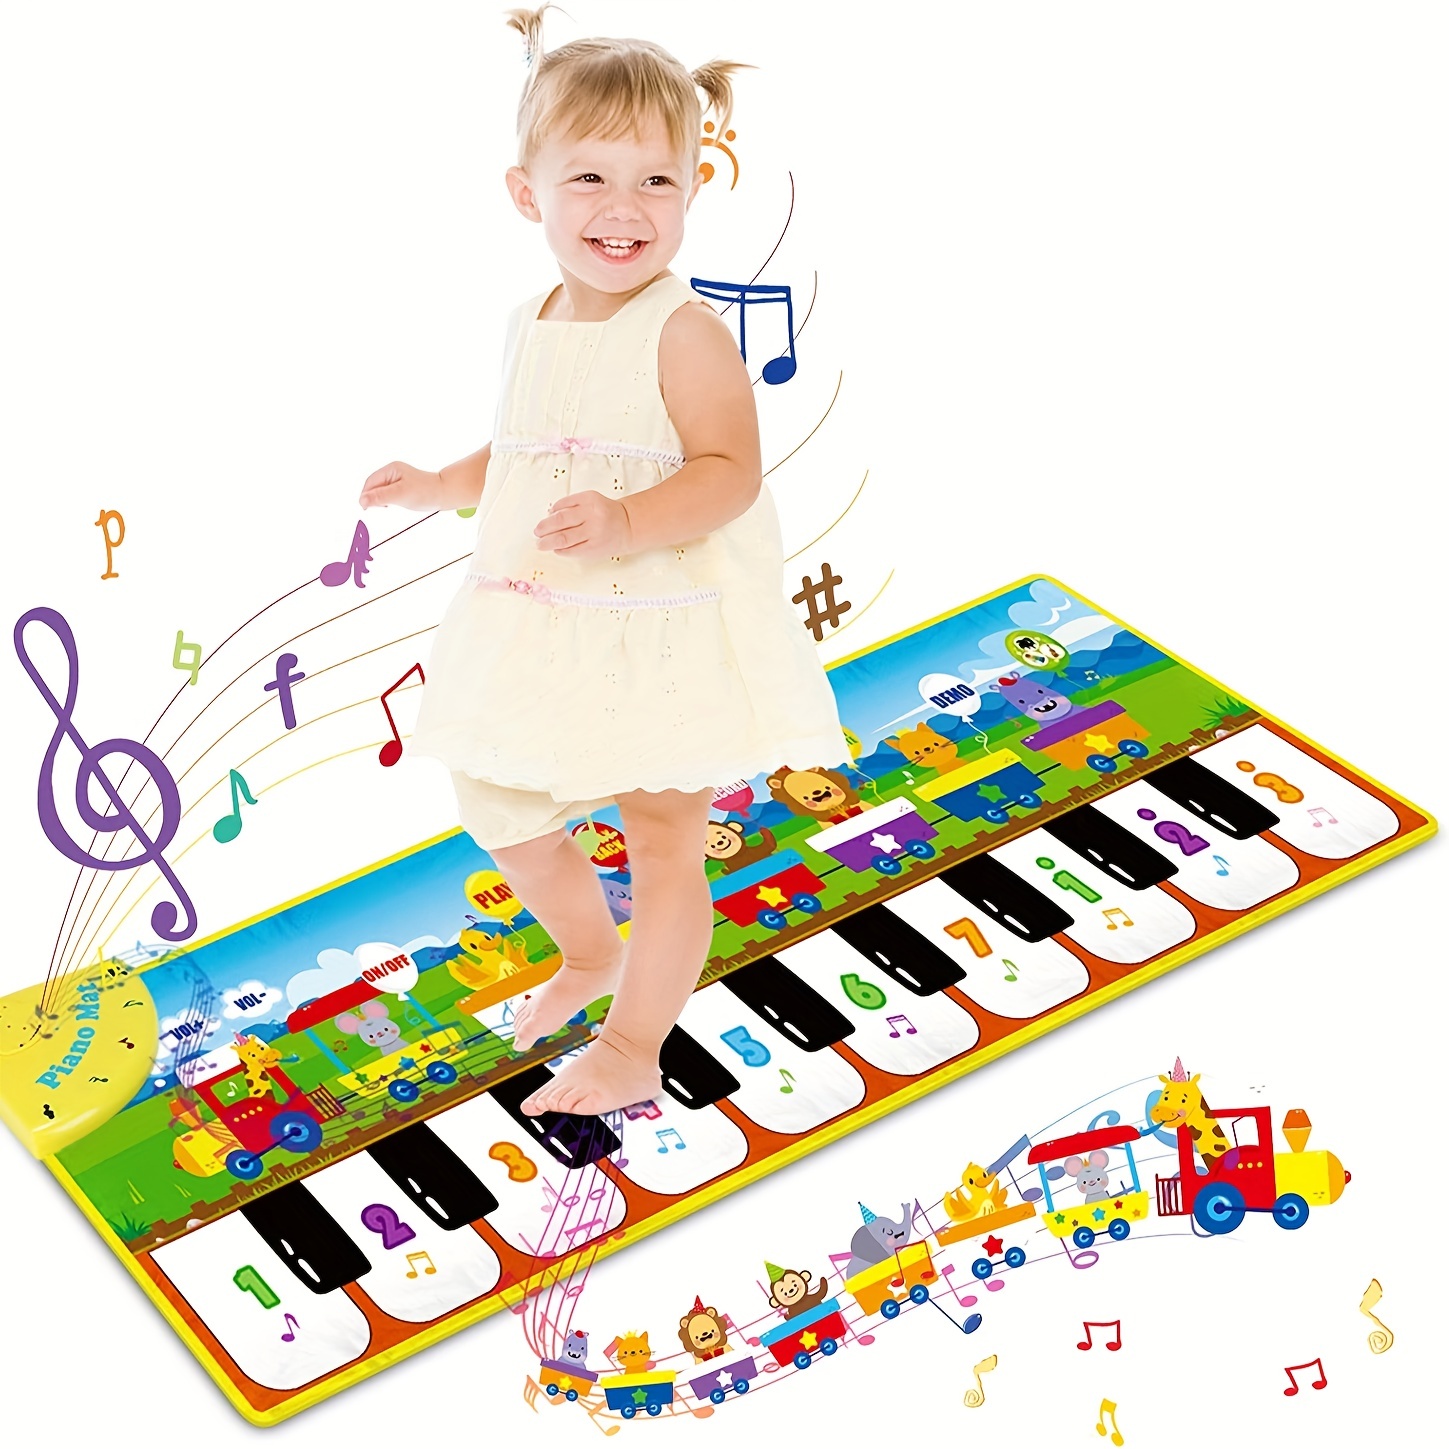 Piano Enfant - Livraison Gratuite Pour Les Nouveaux Utilisateurs